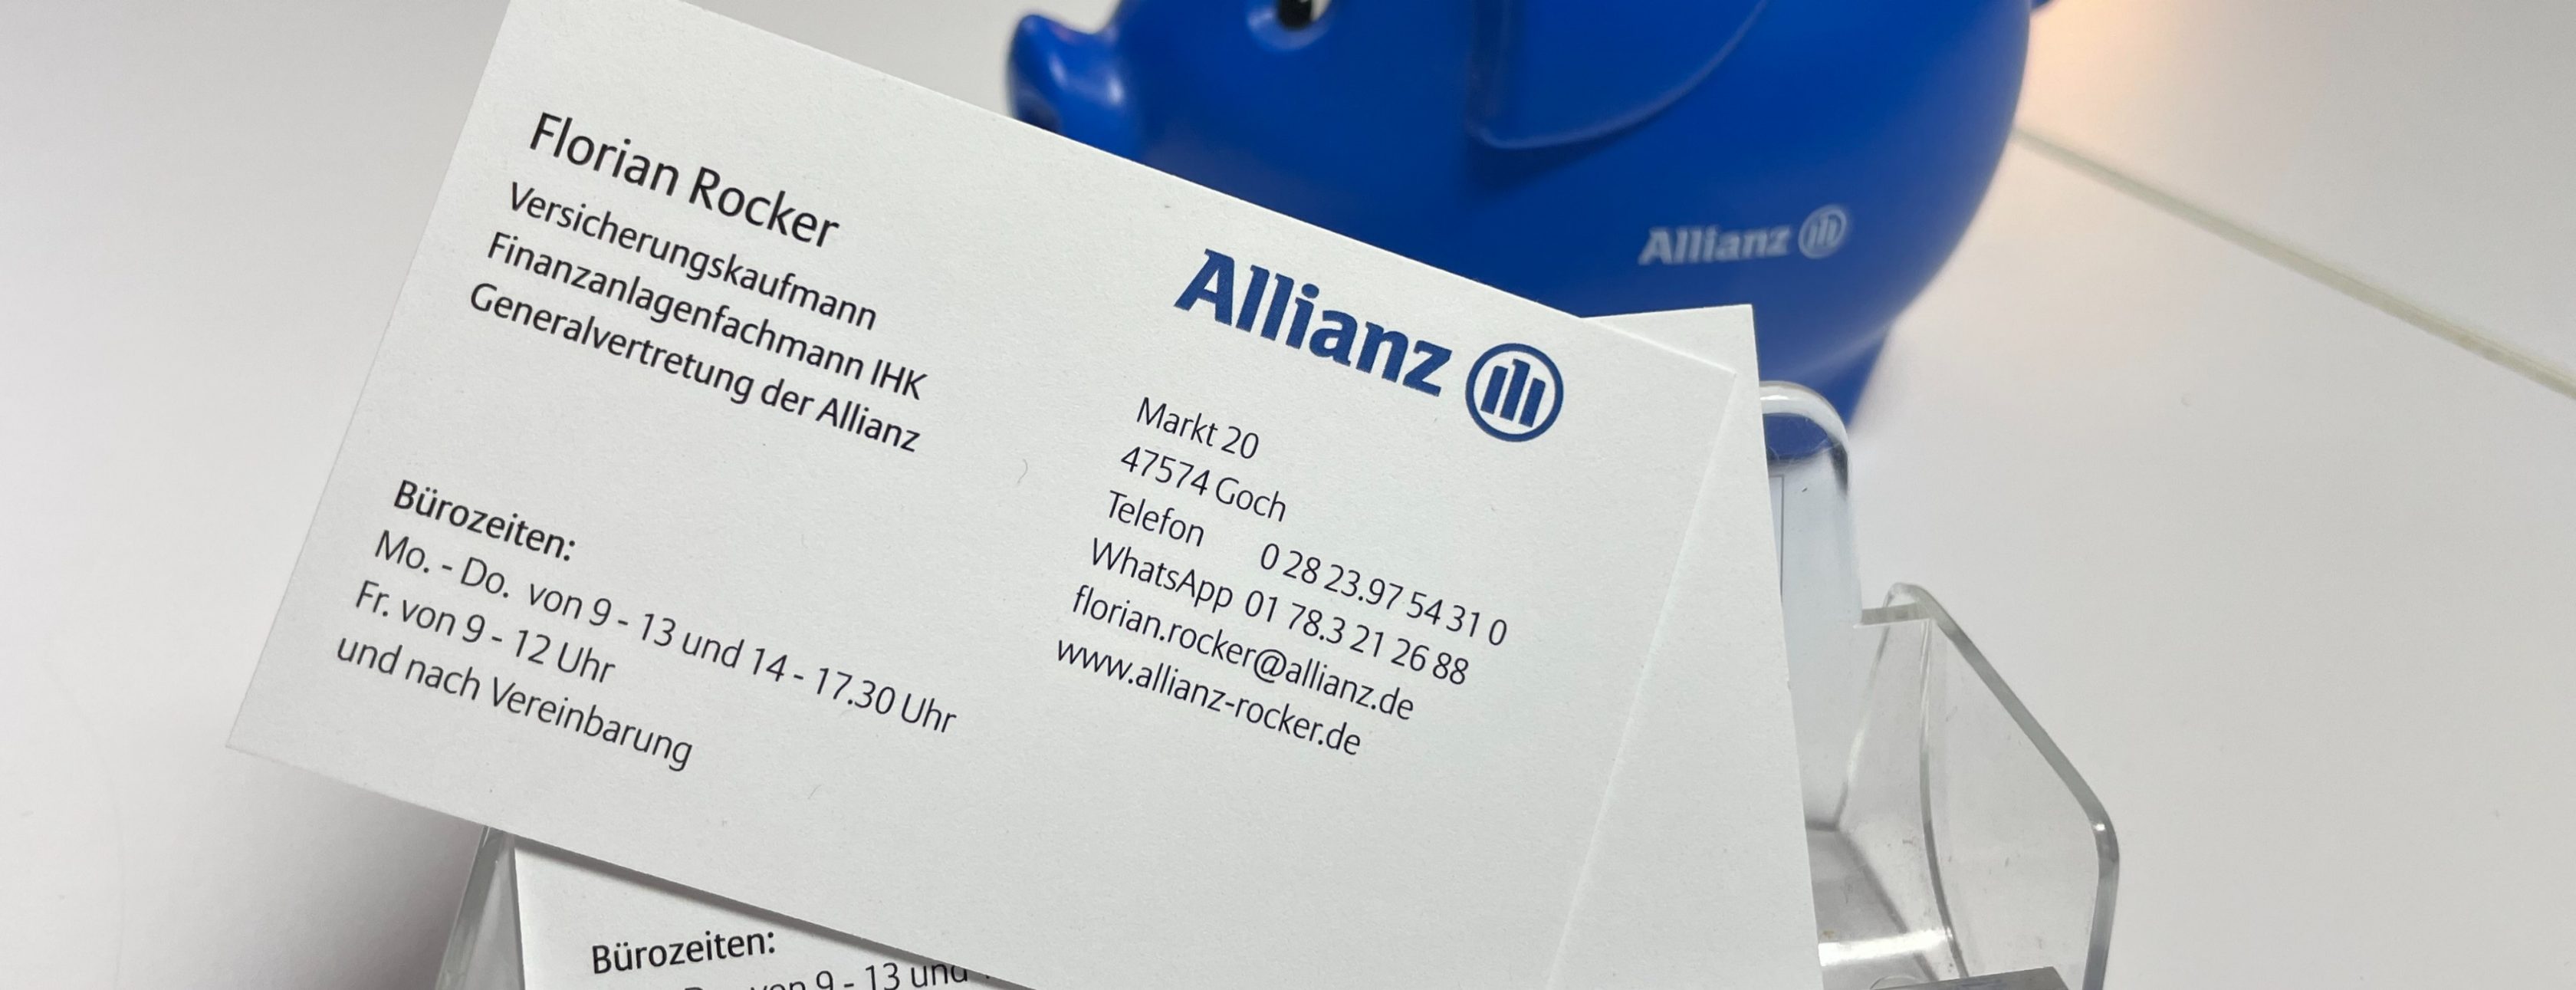 Allianz Versicherung Florian Rocker Goch - Visitenkarte